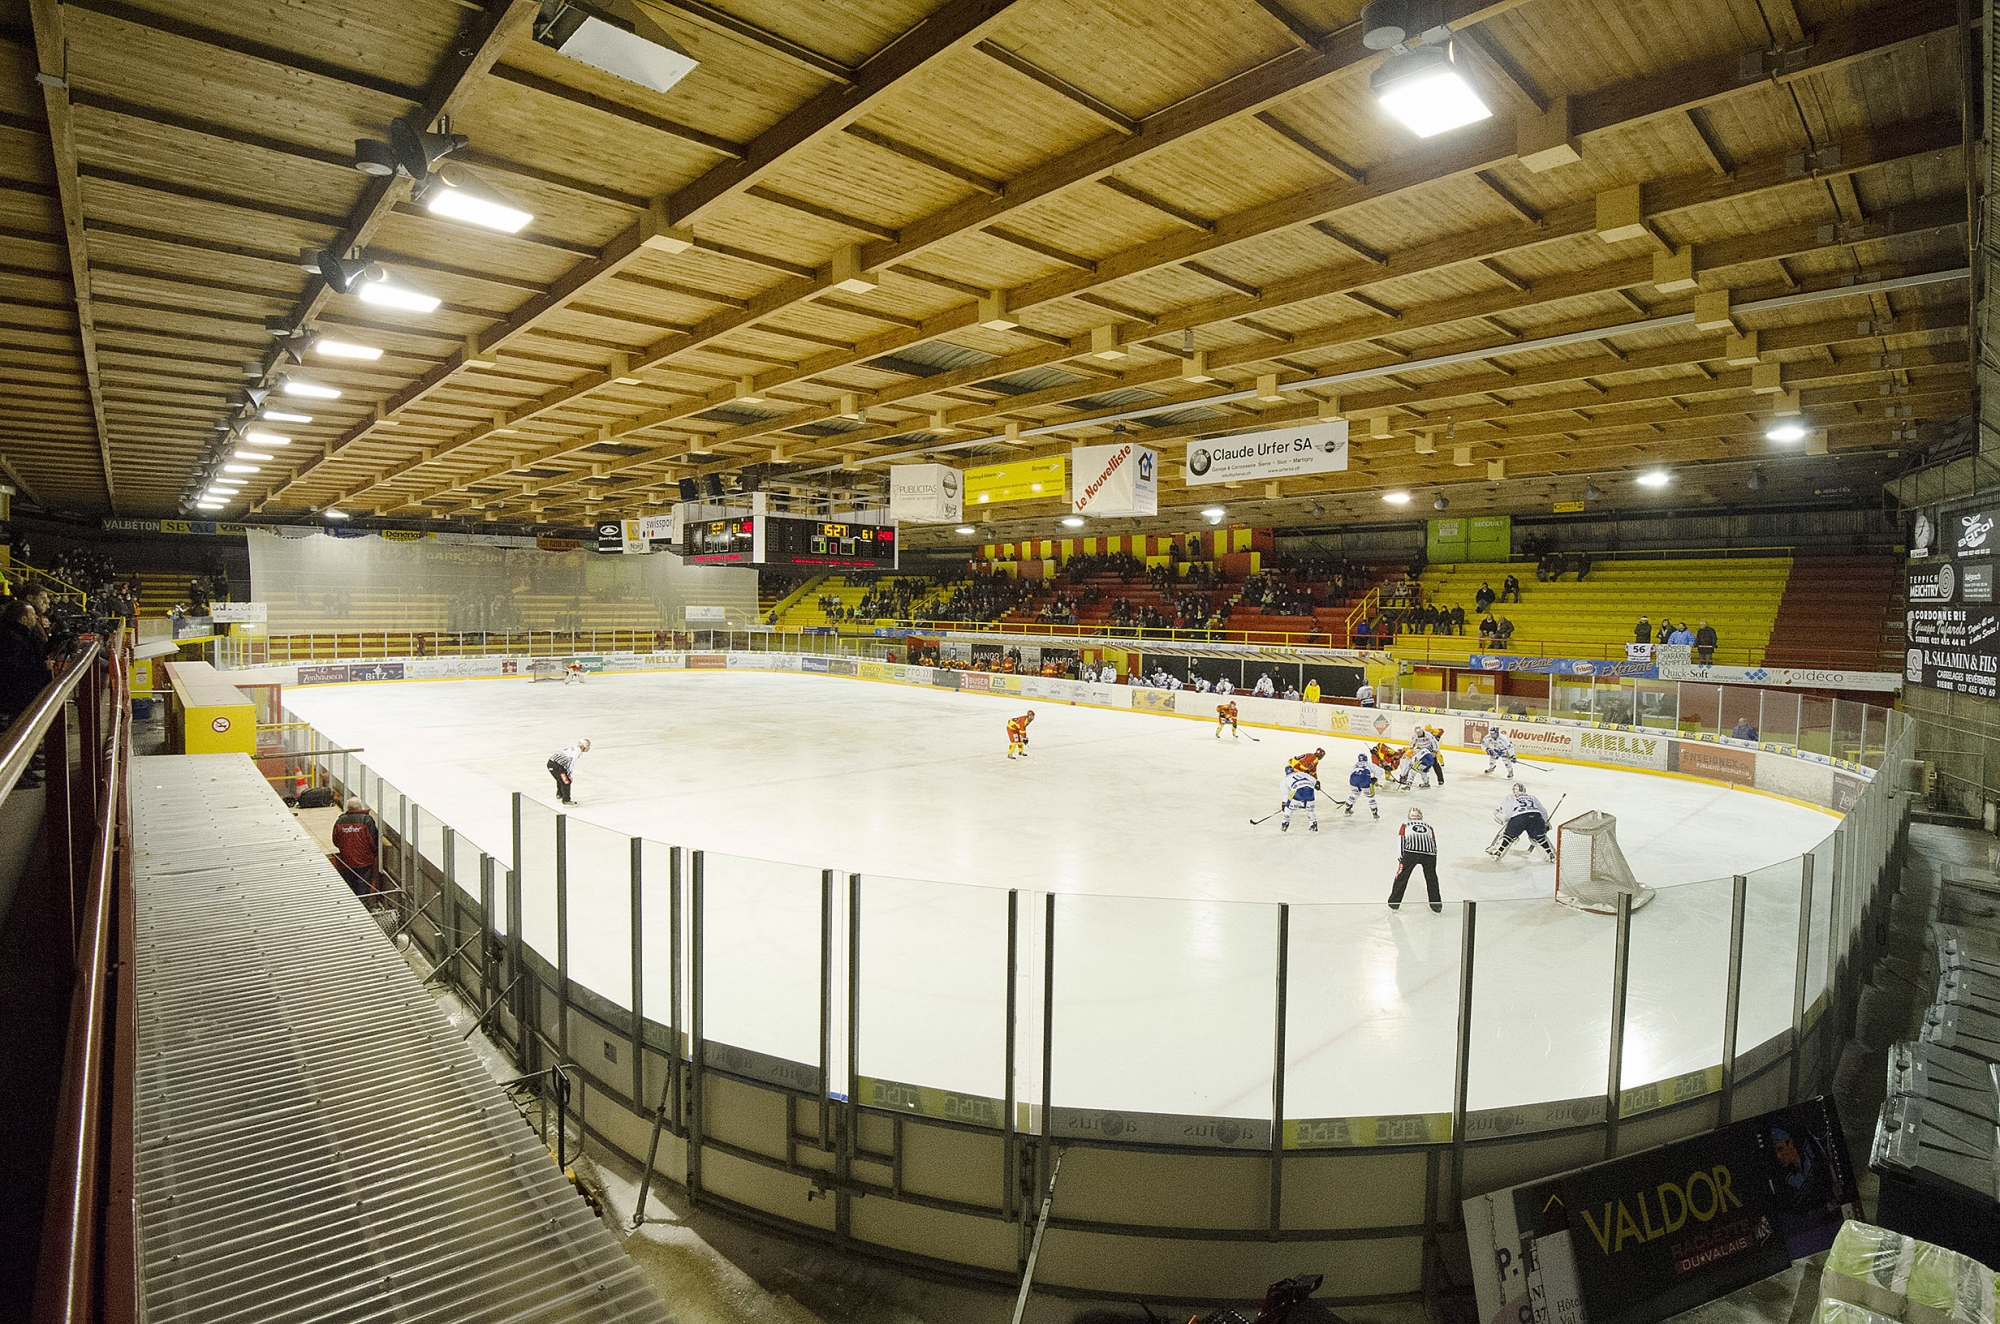 La patinoire de Graben accueillera l'équipe de Suisse le 26 avril prochain